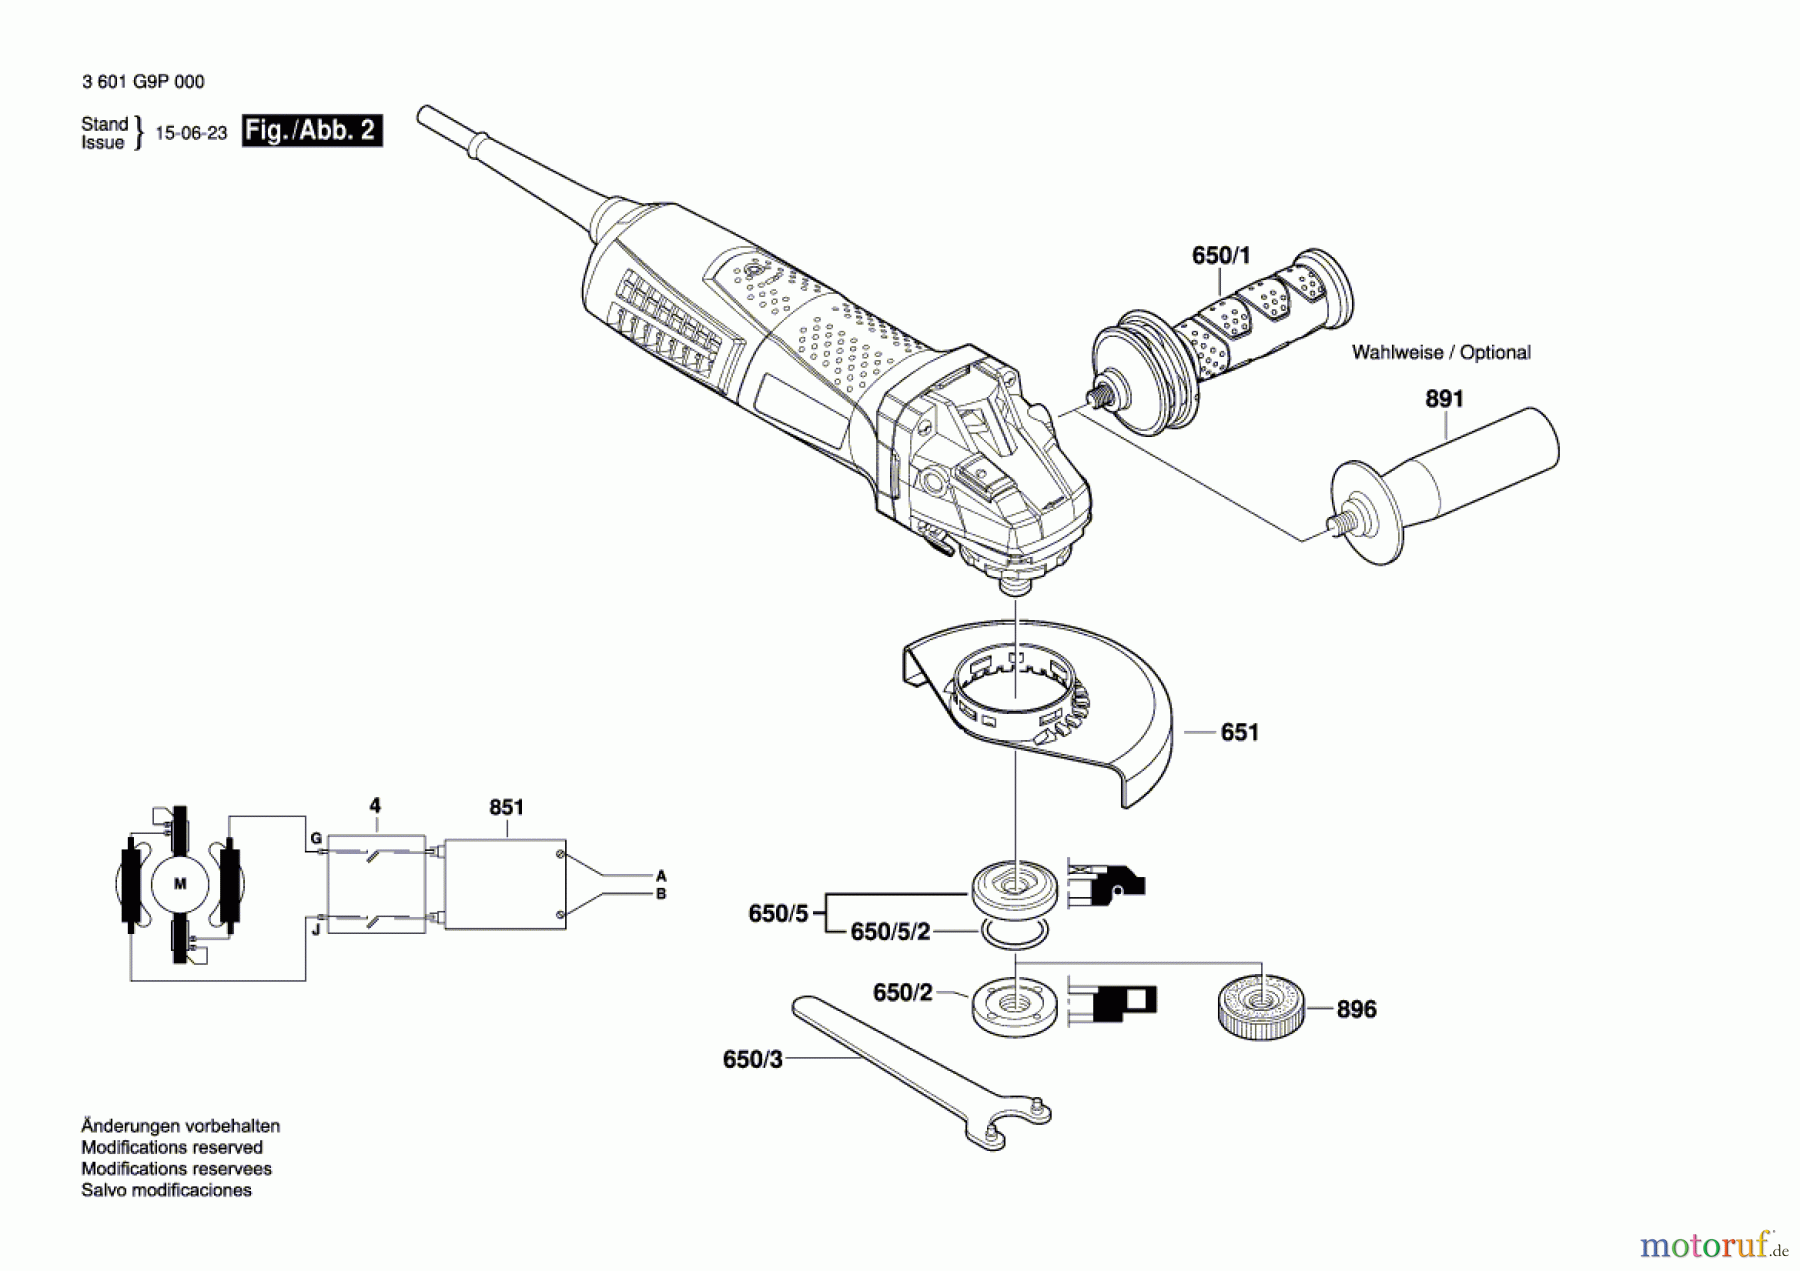  Bosch Werkzeug Winkelschleifer GWS 19-125 CIE Seite 2